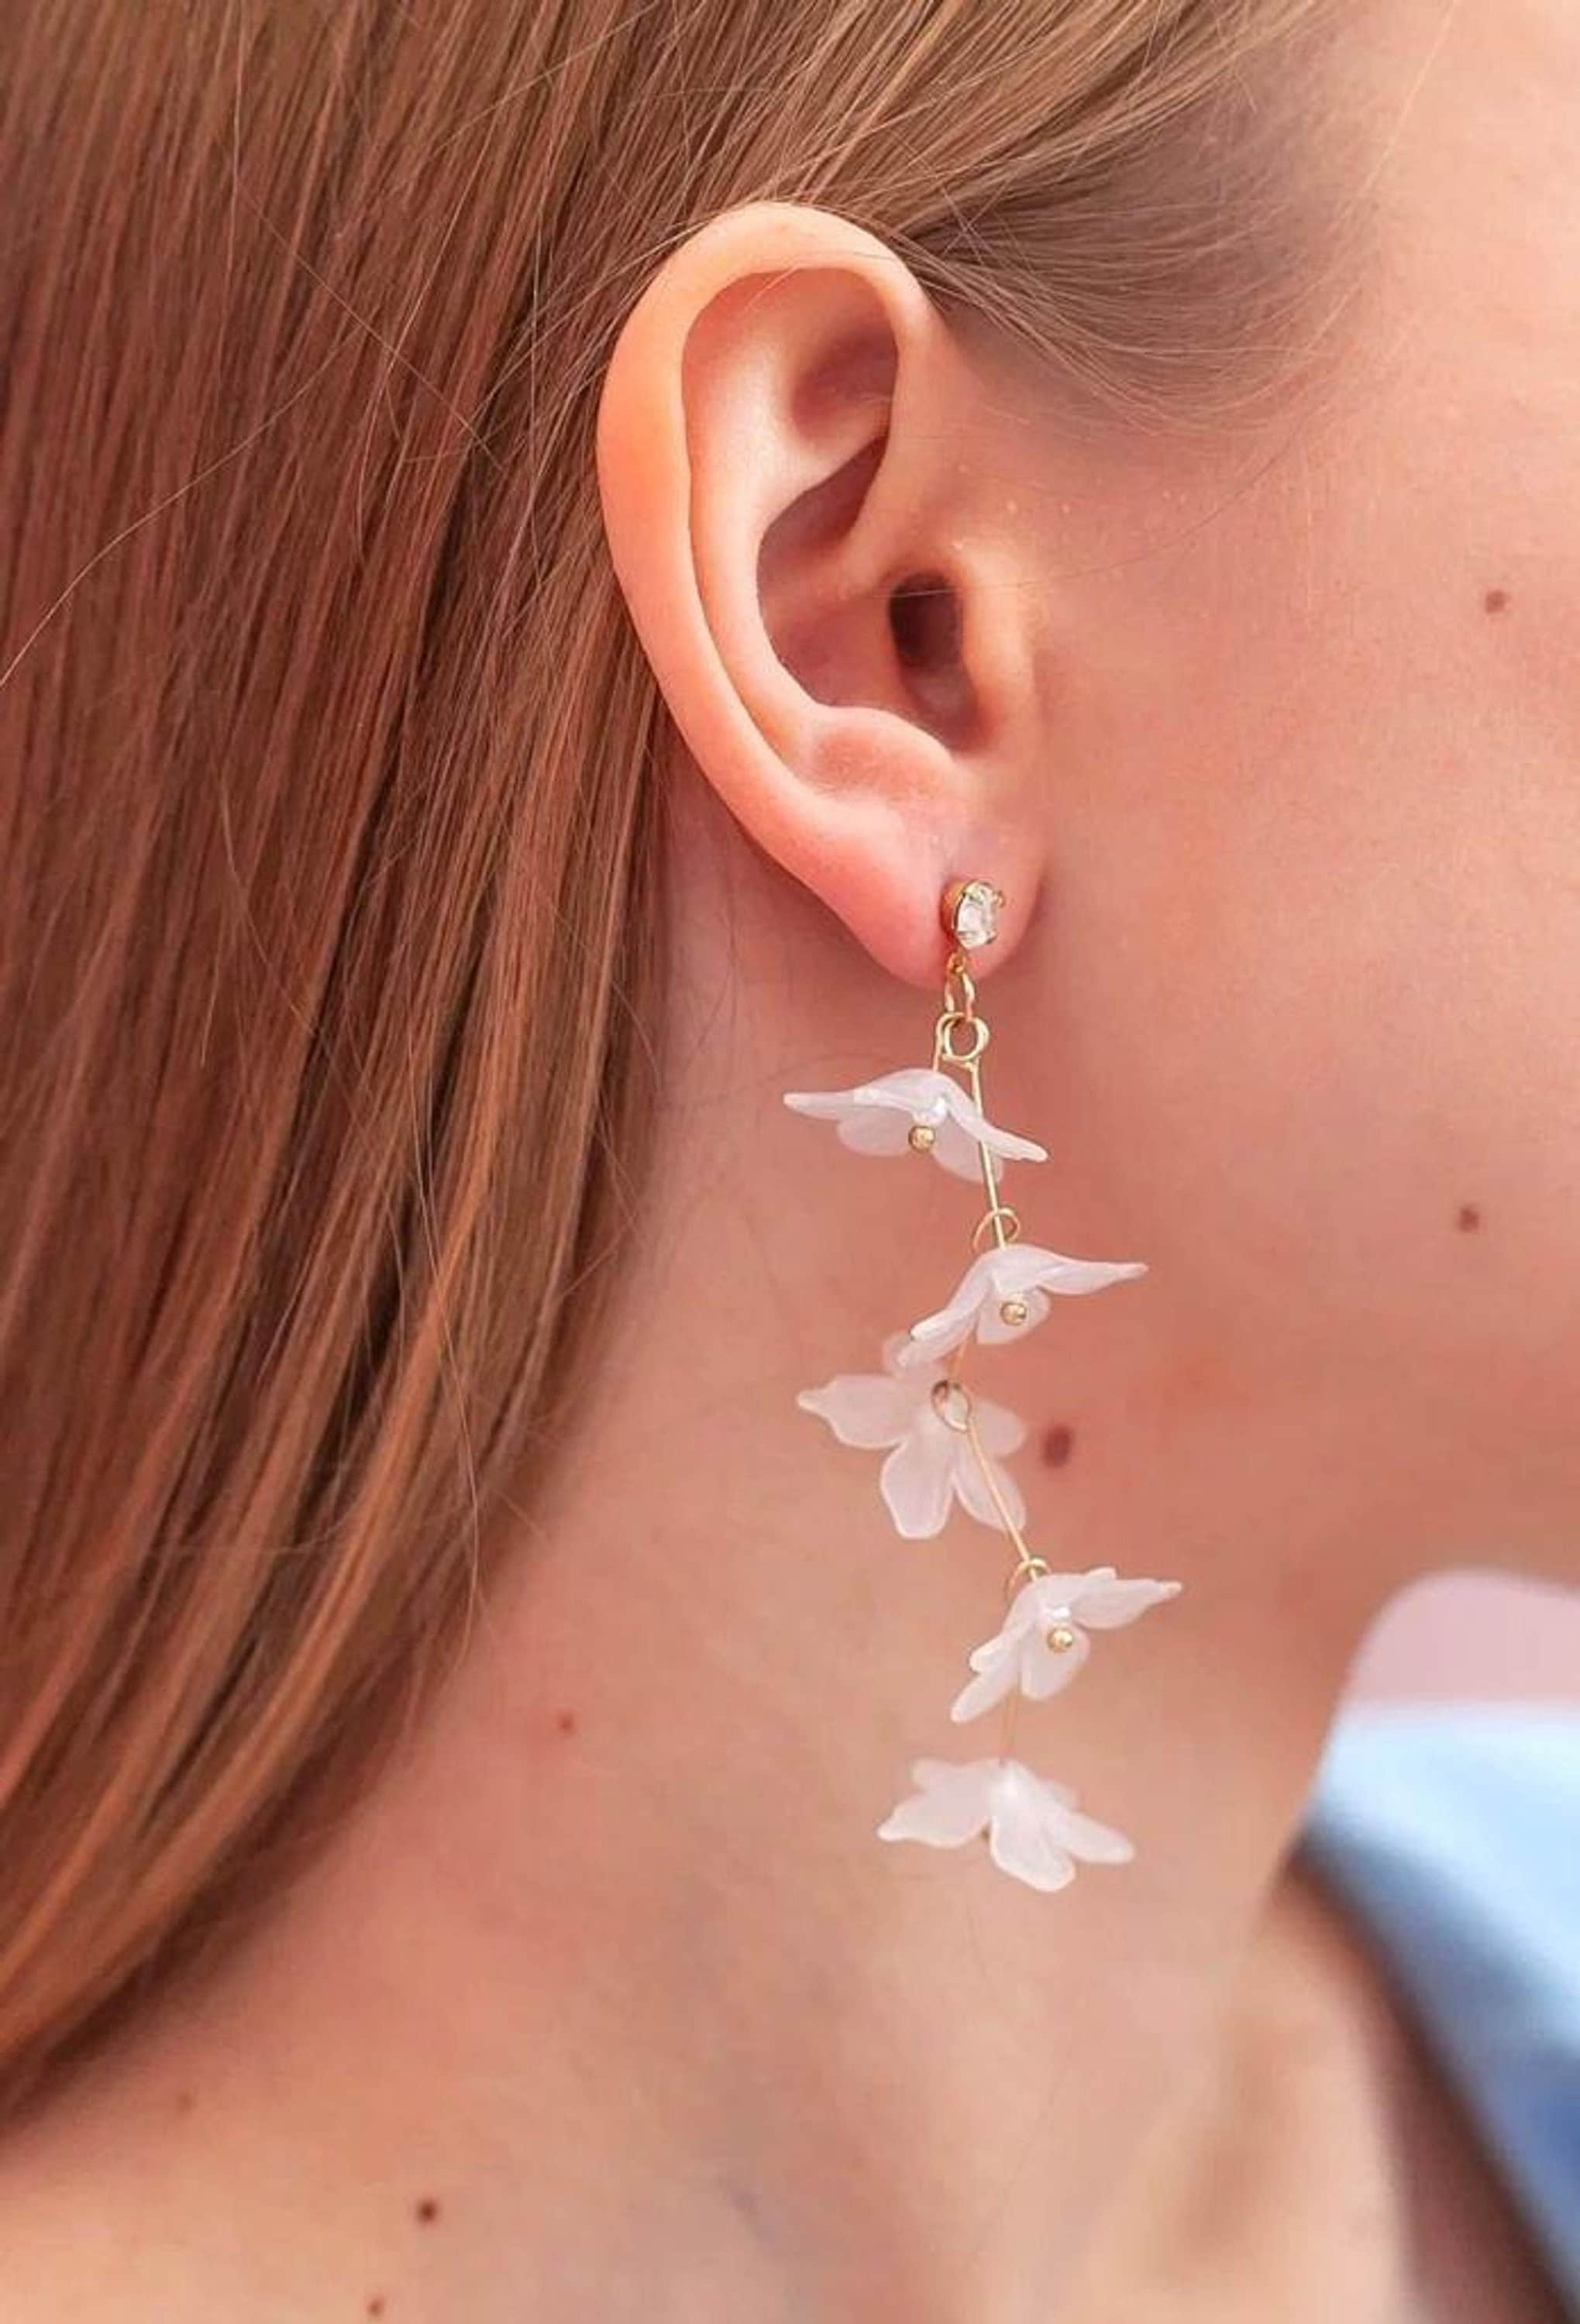 Cherry Blossom Earrings - Romantic Pink Sakura Gold Color Earring